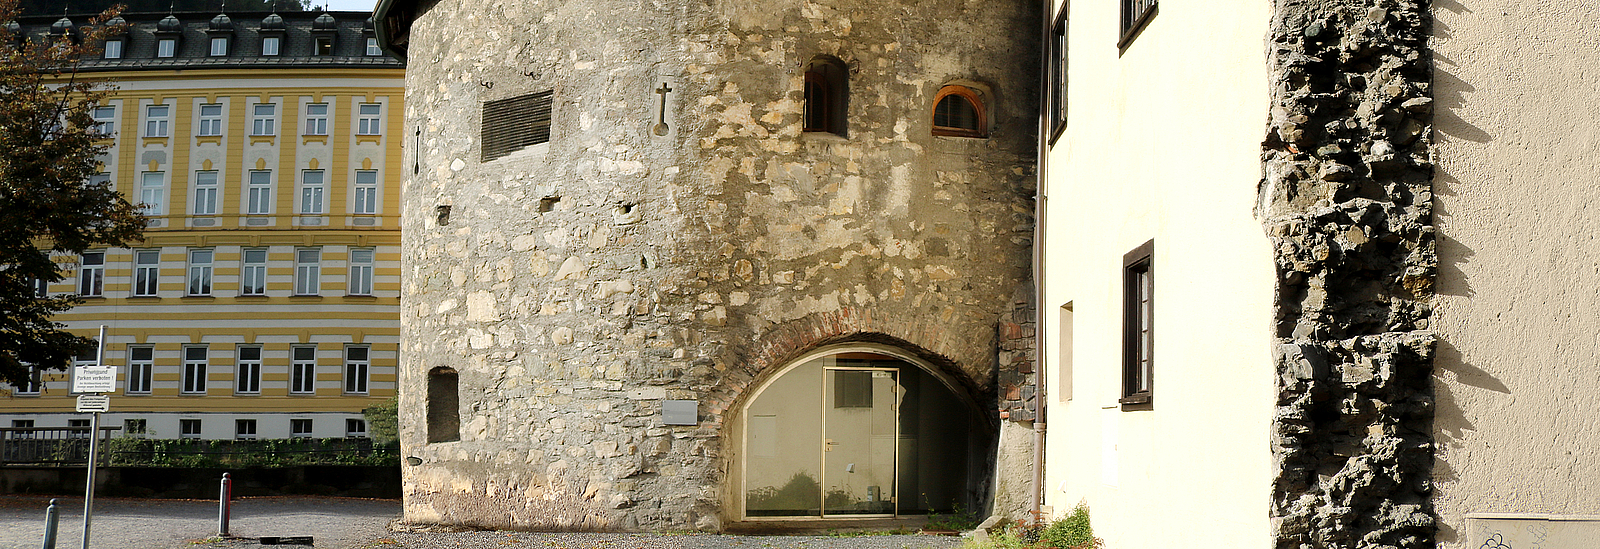 Der Pulverturm in Feldkirch von außen